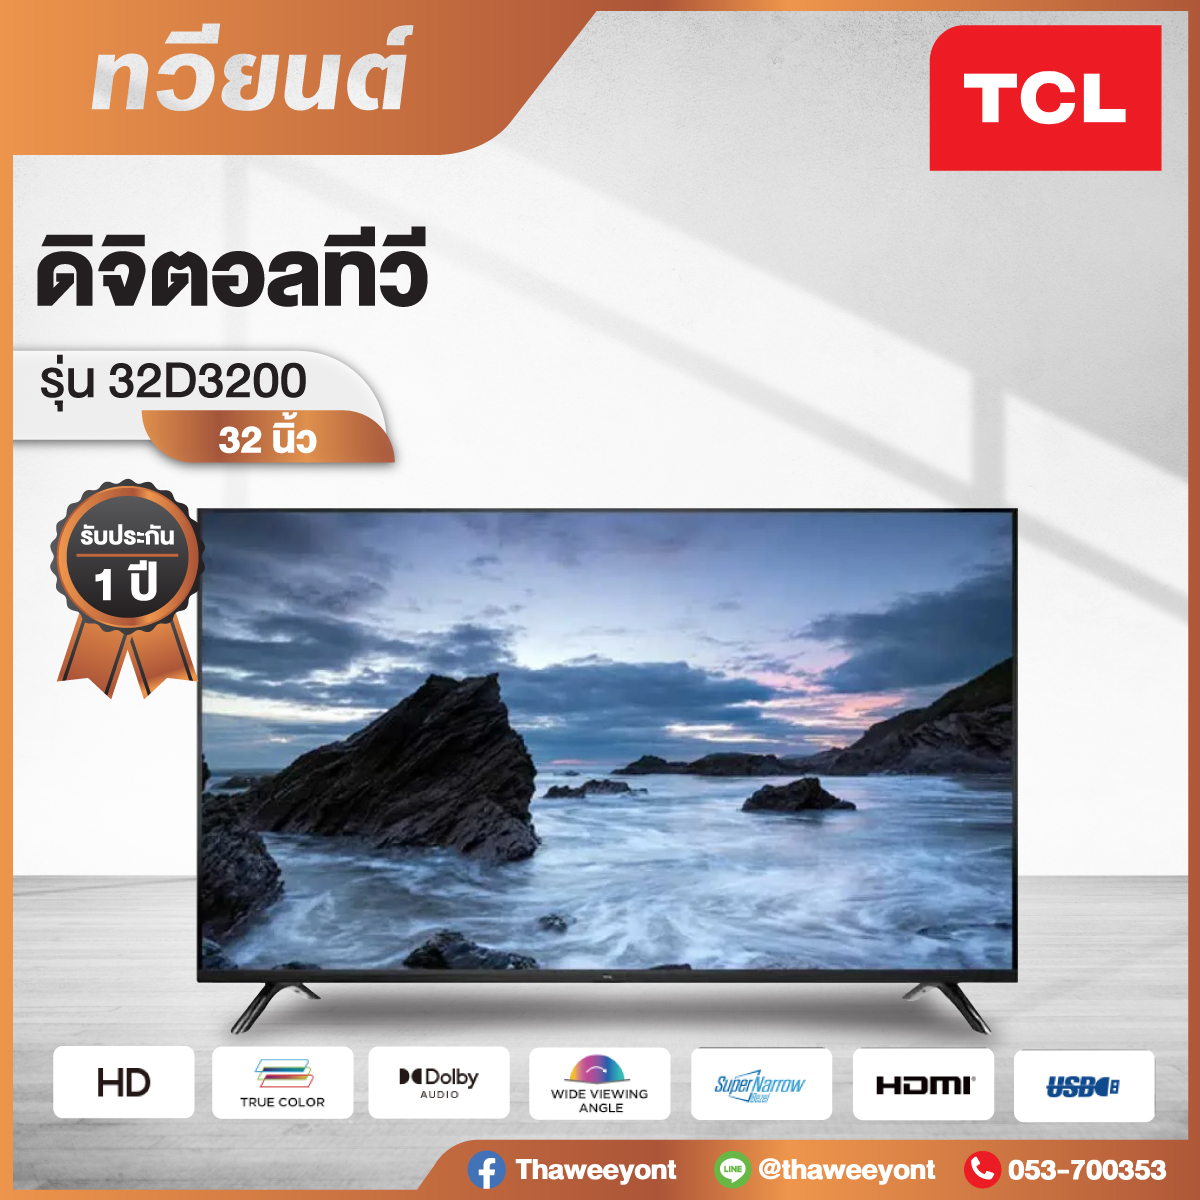 Digital TV TCL รุ่น 32D3200 ขนาด 32 นิ้ว ความละเอียด HD 